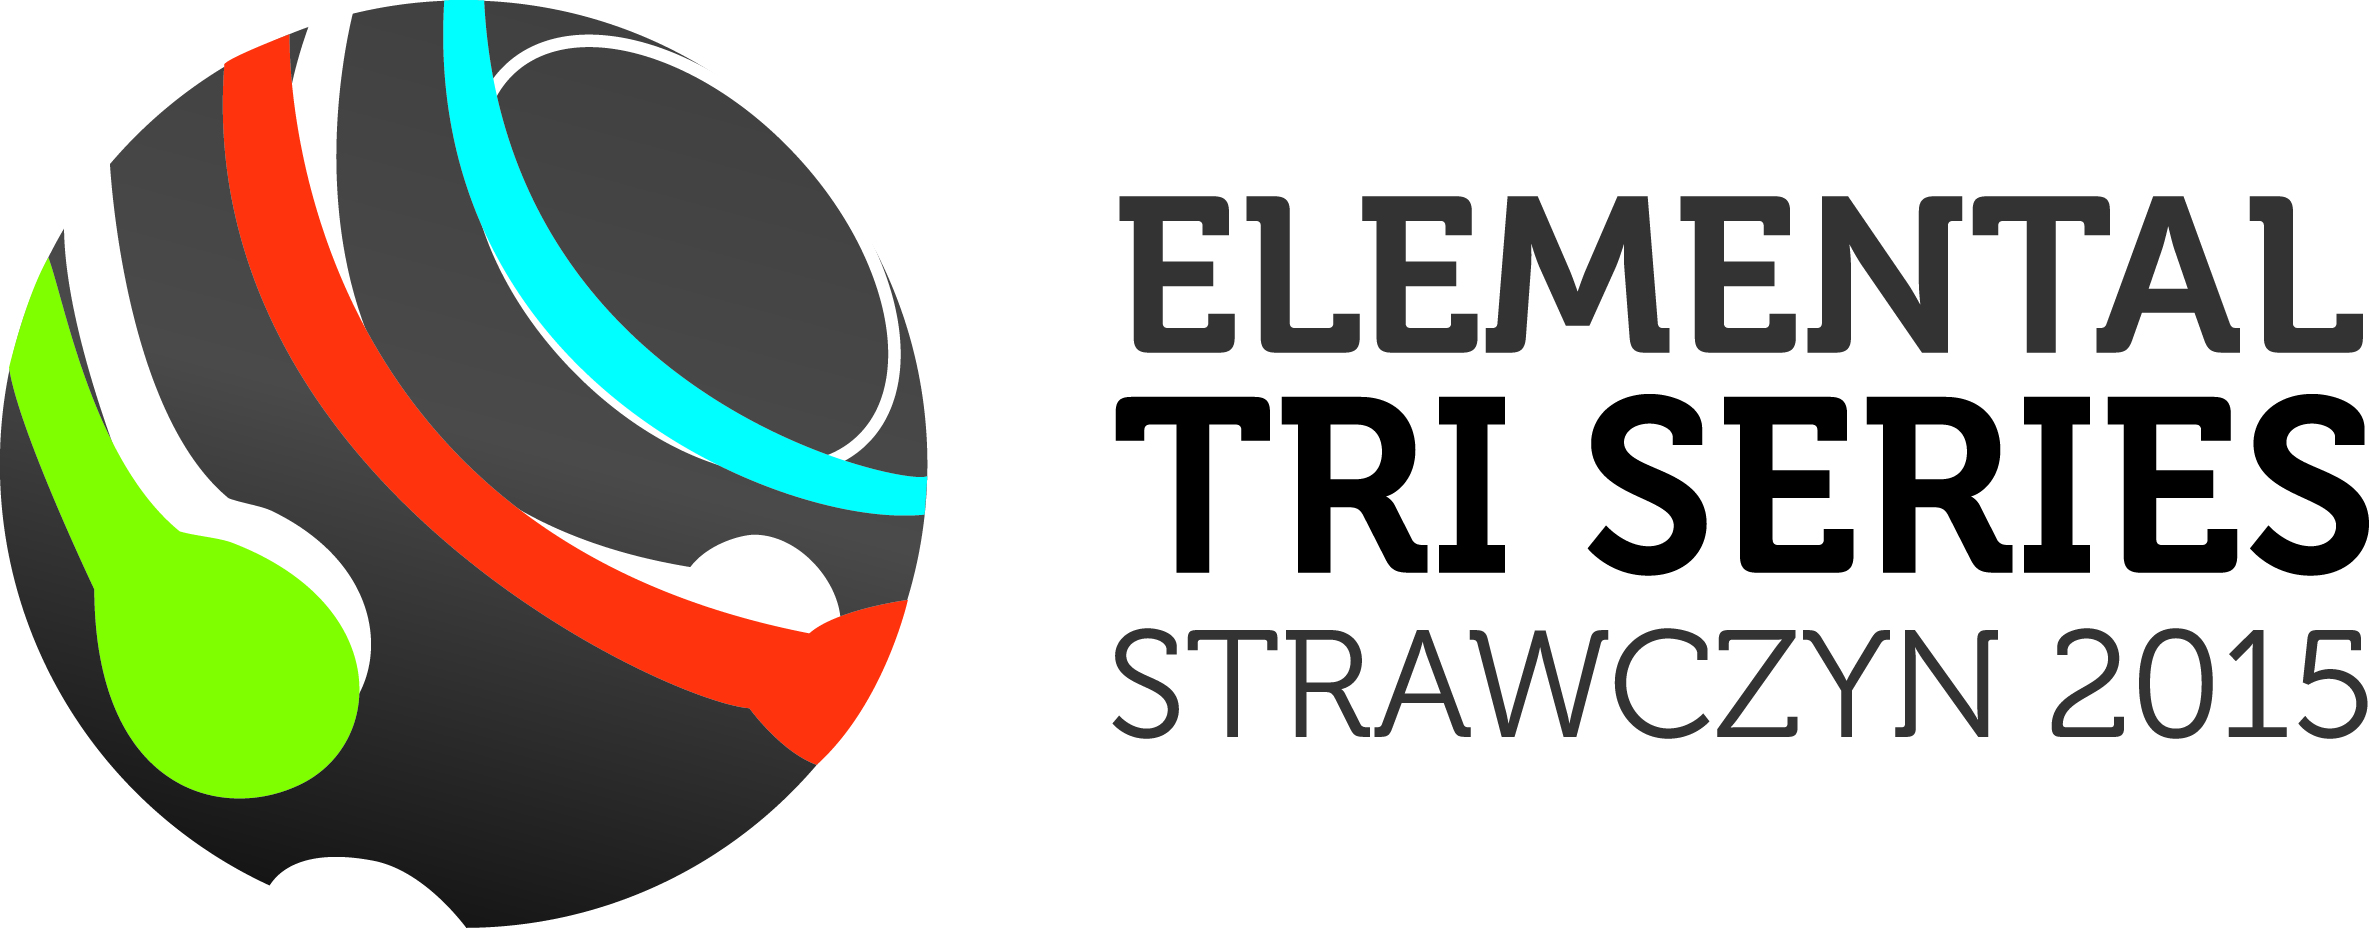 ets2015_elemental_tri_series_strawczyn_2015